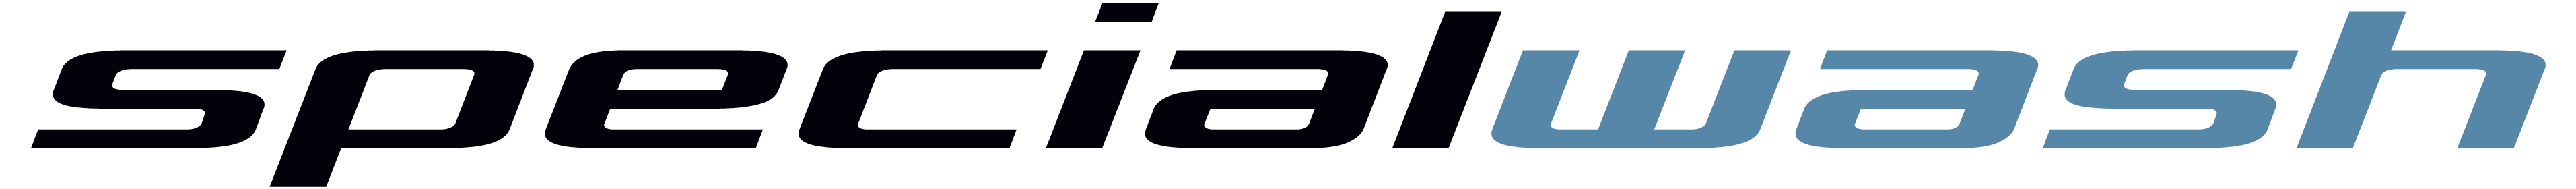 logo-sw